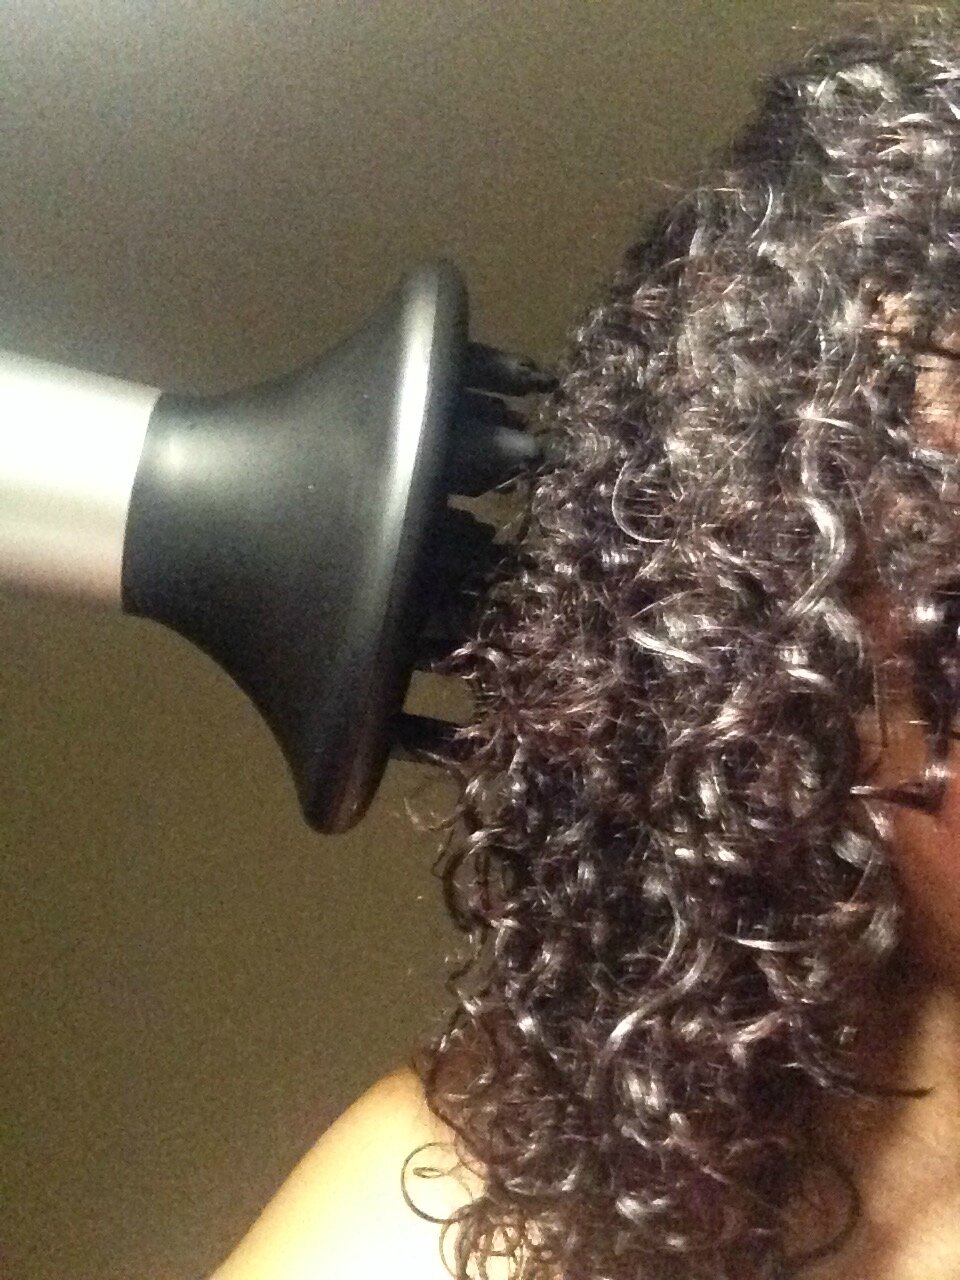 Cheveux bouclés: faut-il avoir peur du diffuseur? Comment bien l'utiliser -  Congratulations! It's a Curl!